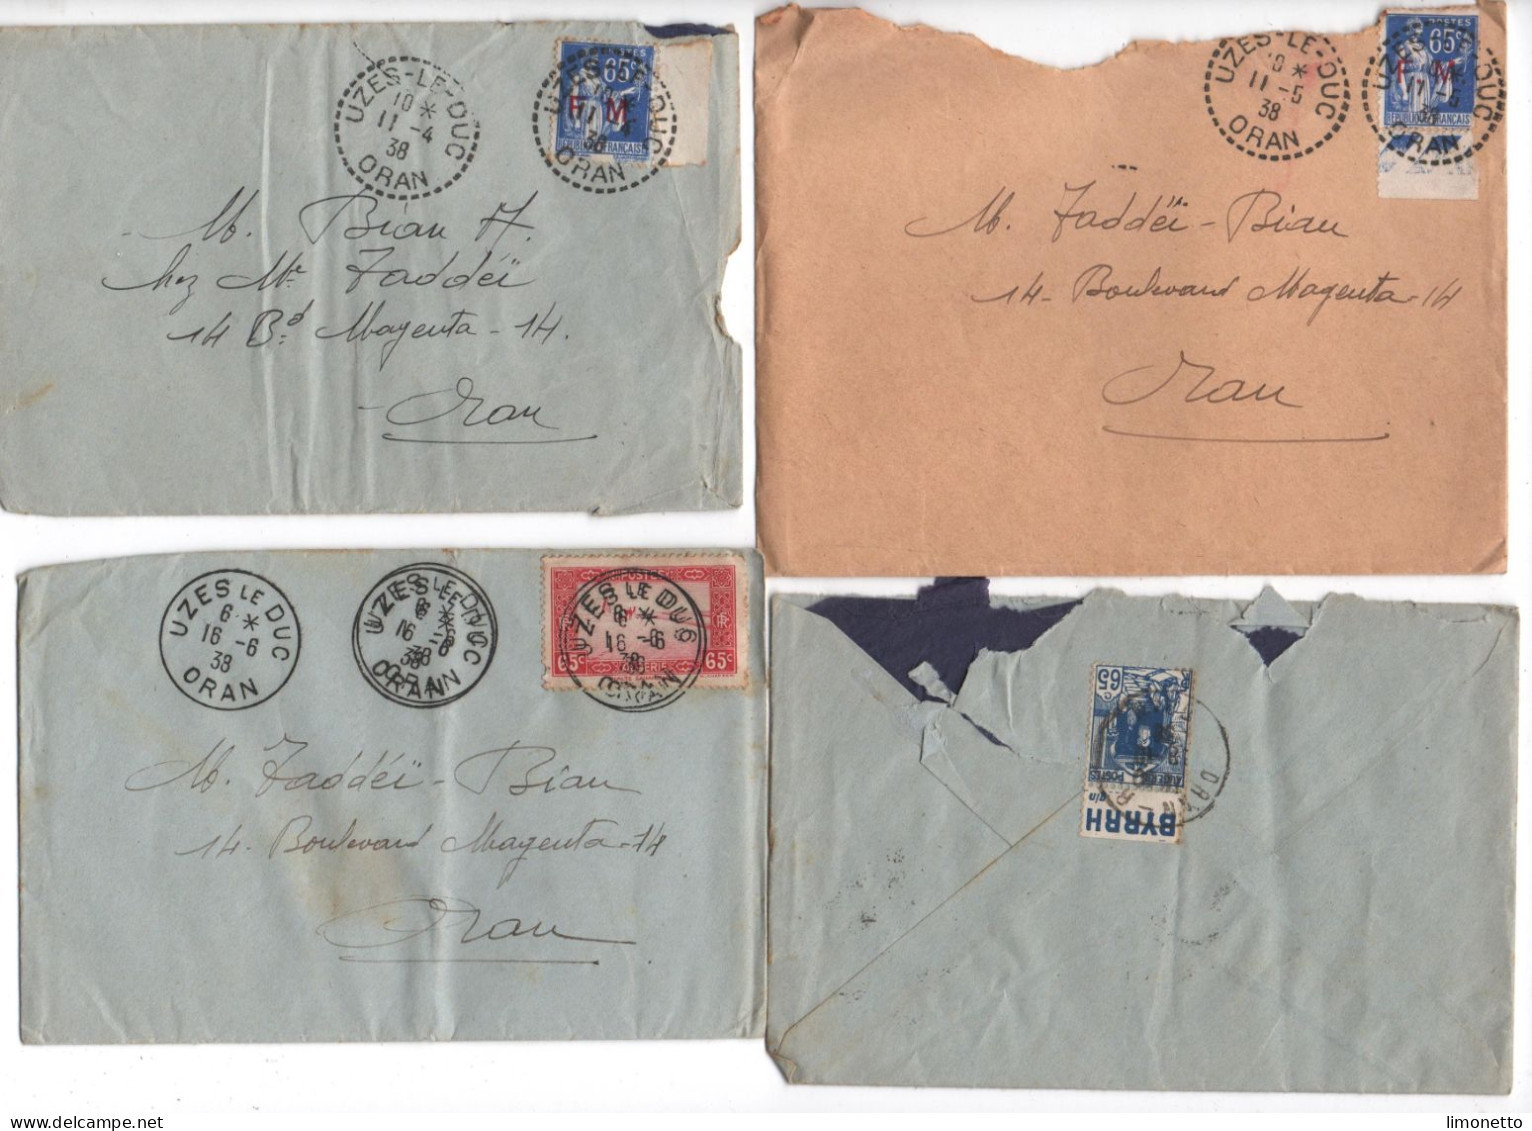 ALGERIE -1938 - Lot De 4 Enveloppes - D'UZES-le-DUC -ORAN - Aff. Divers Dont FM 65 Cts -1 Timbre Bandelette PUB - Covers & Documents